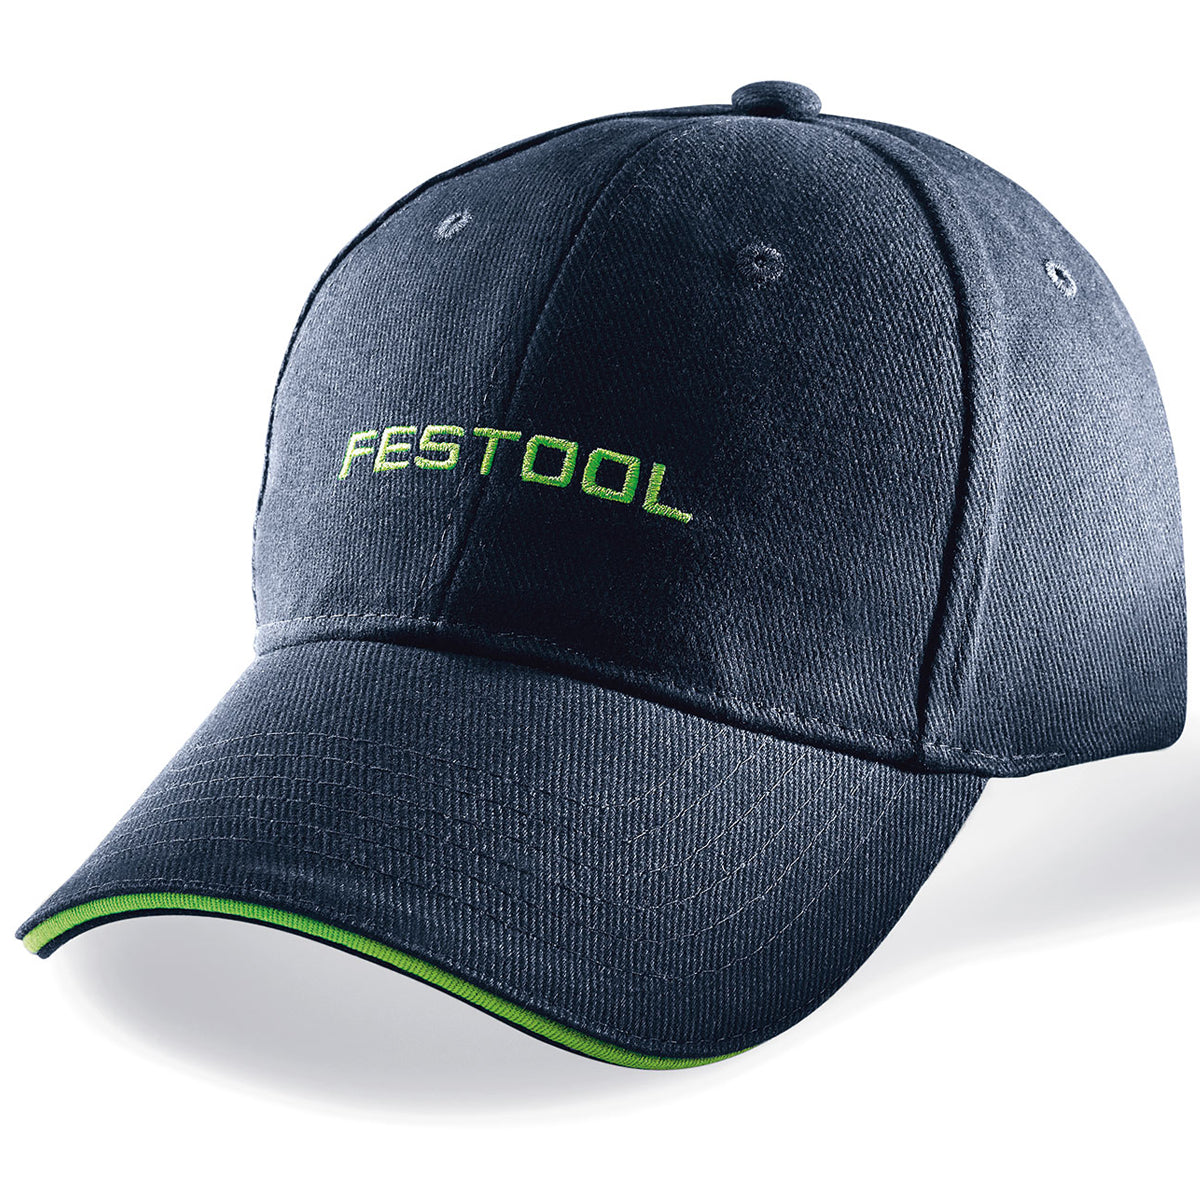 Festool 497899 Dark Blue Golf Cap and Baseball Cap